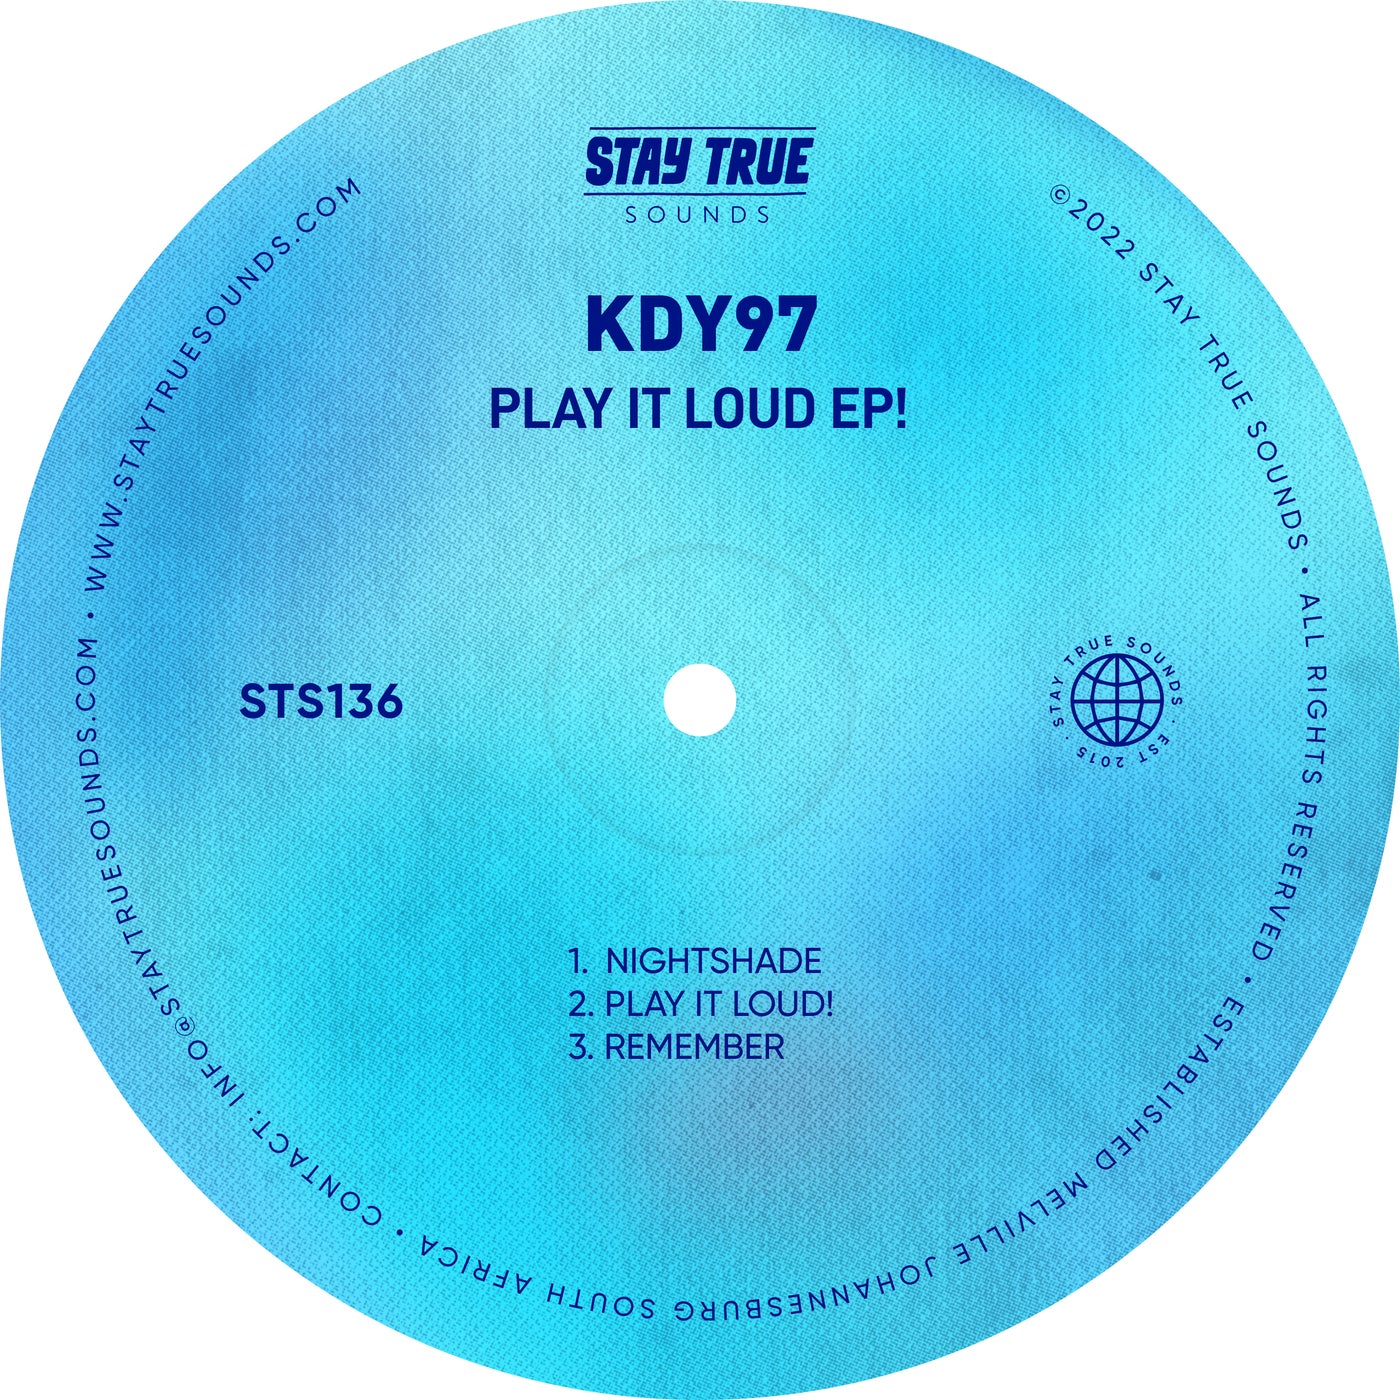 KDY97 - Play It Loud! [Stay True Sounds]